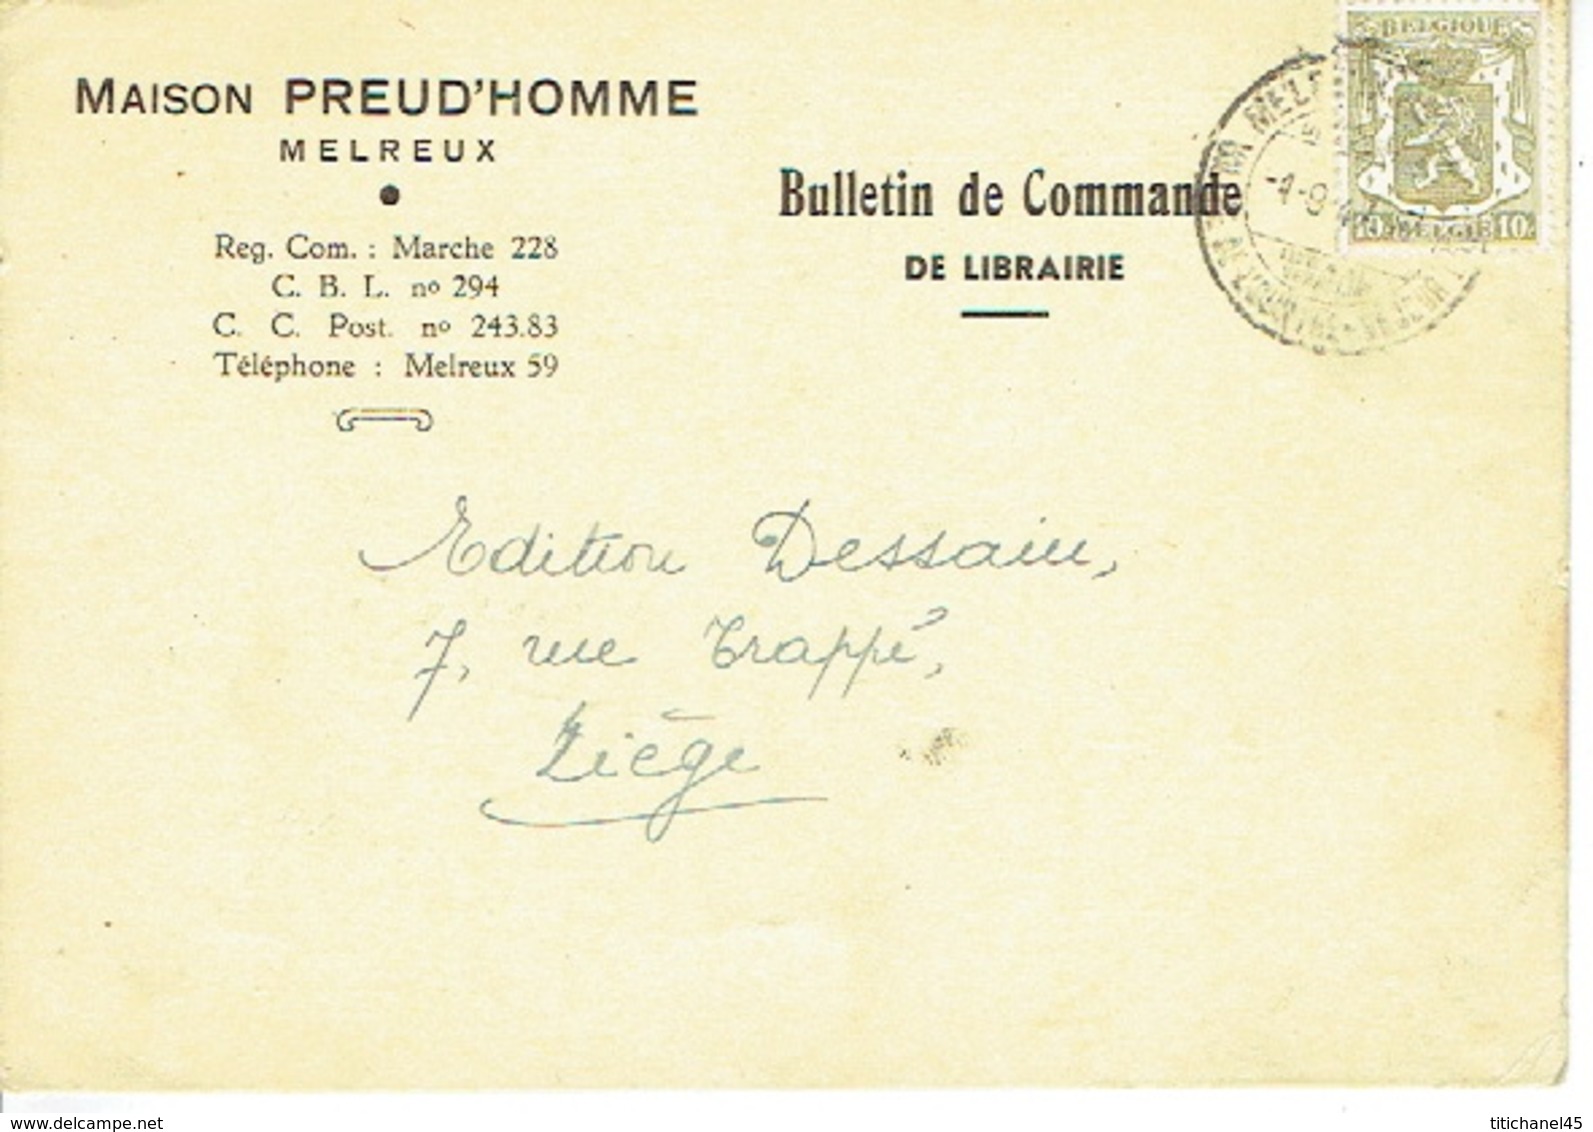 PK Publicitaire MELREUX 1947 - Maison PREUDHOMME - Librairie - Hotton